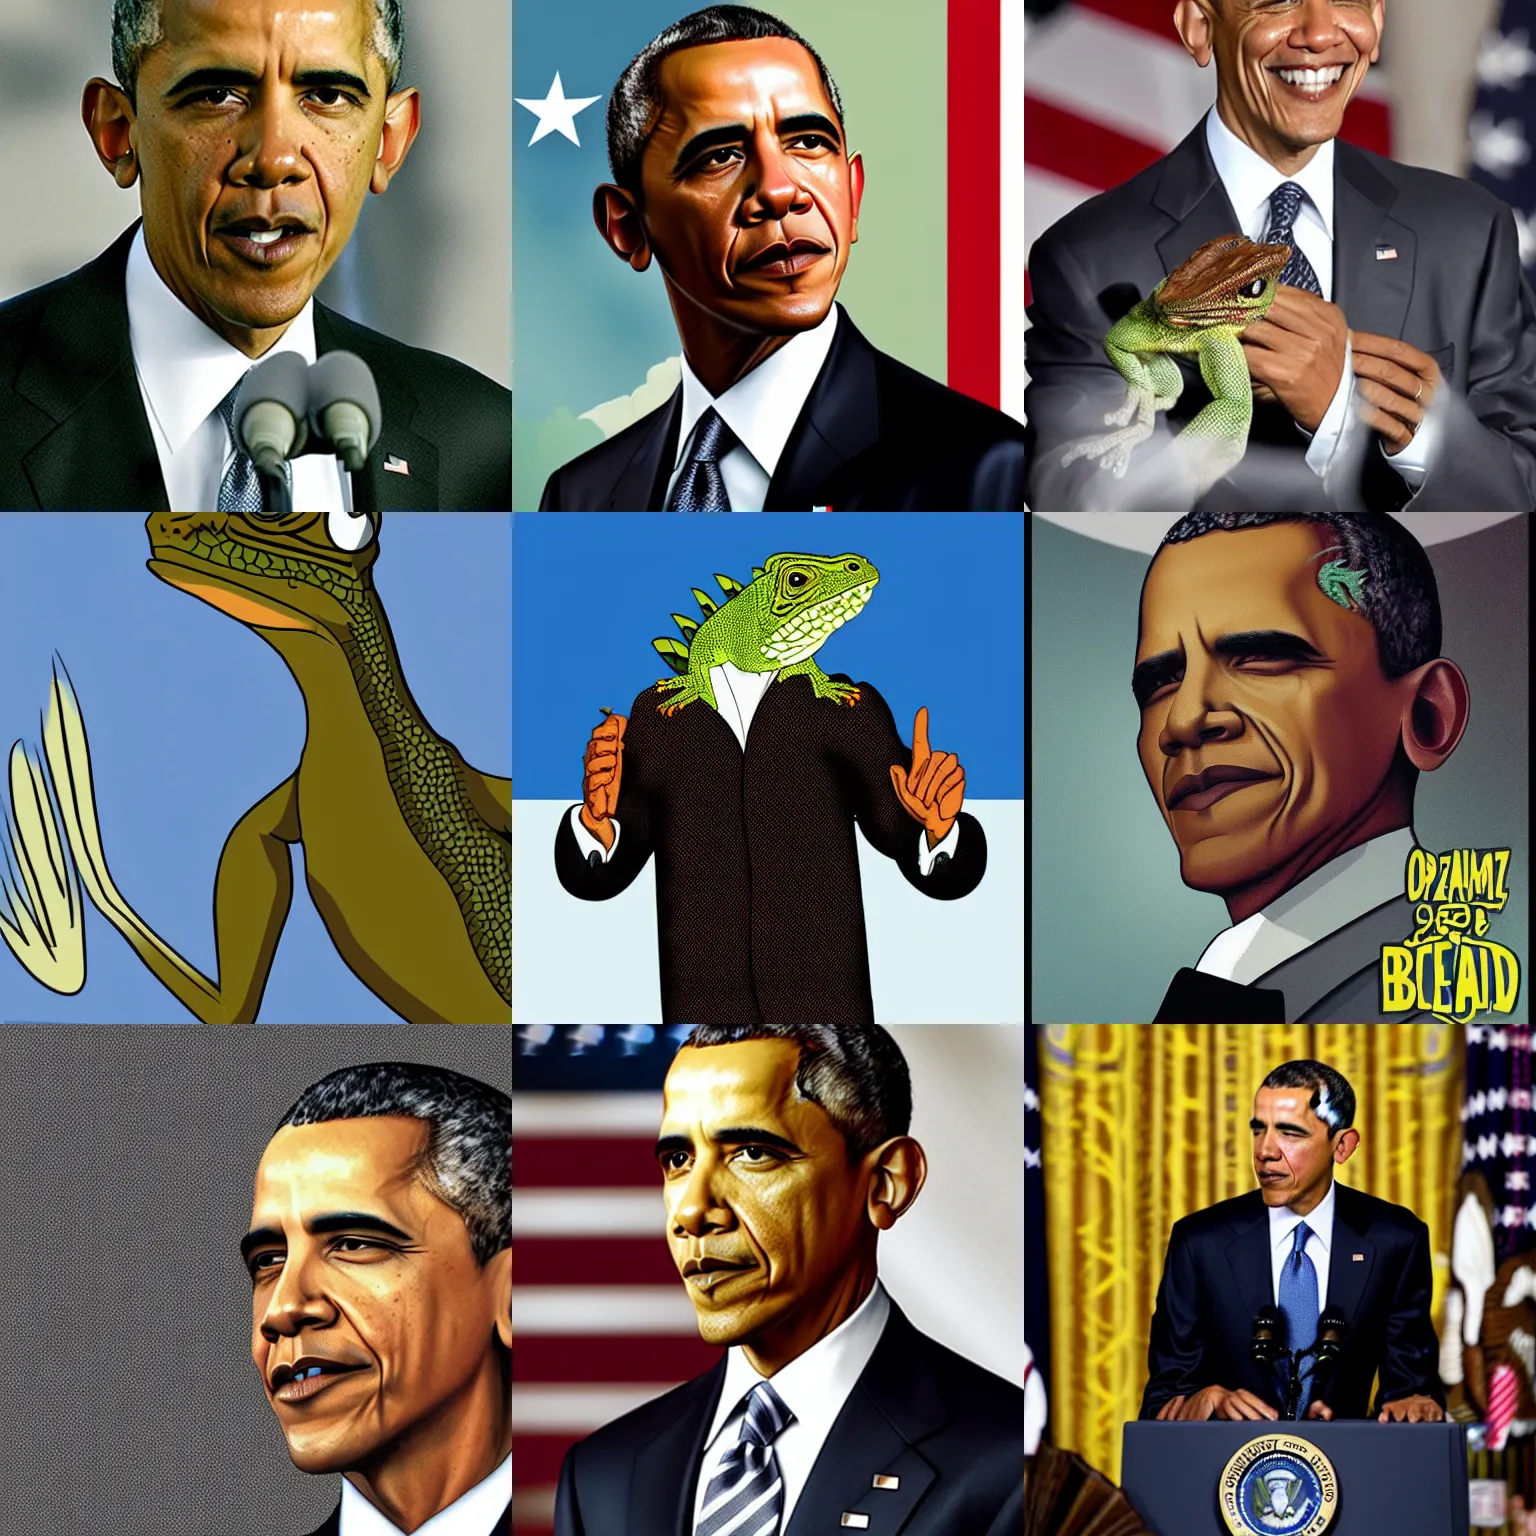 Prompt: obama as a lizard